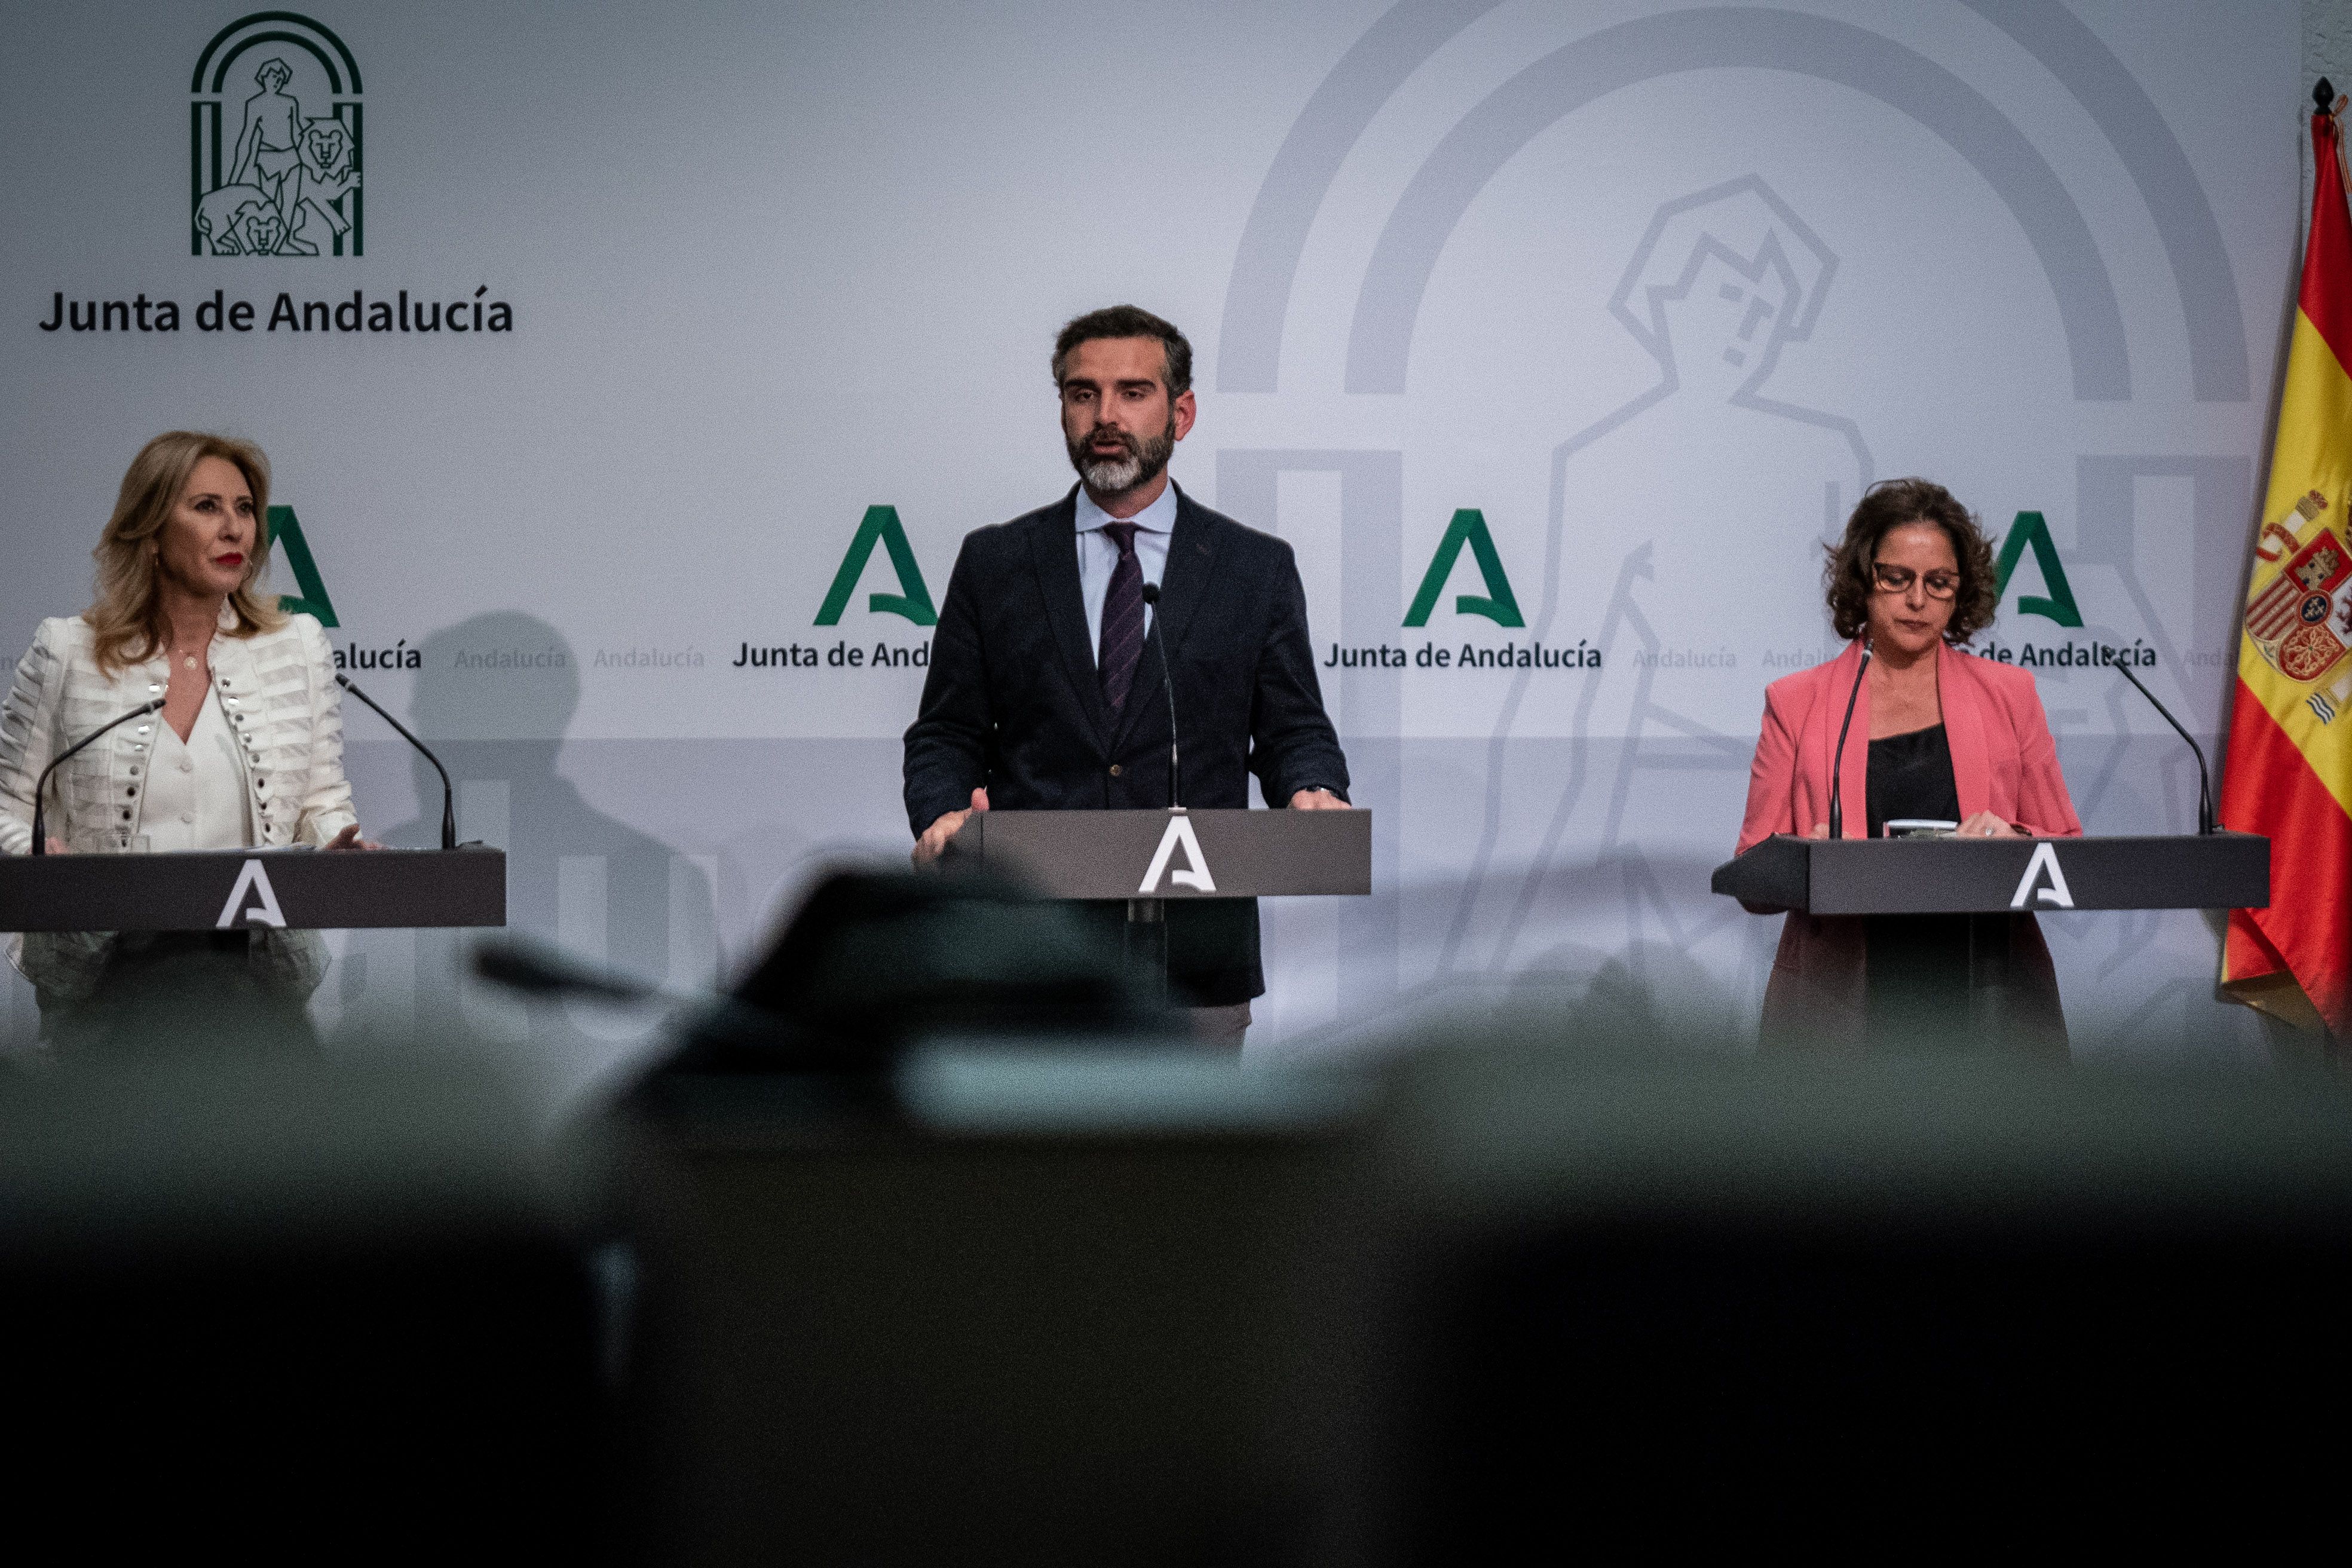 La Junta de Andalucía ha presentado los estatutos de Trade.